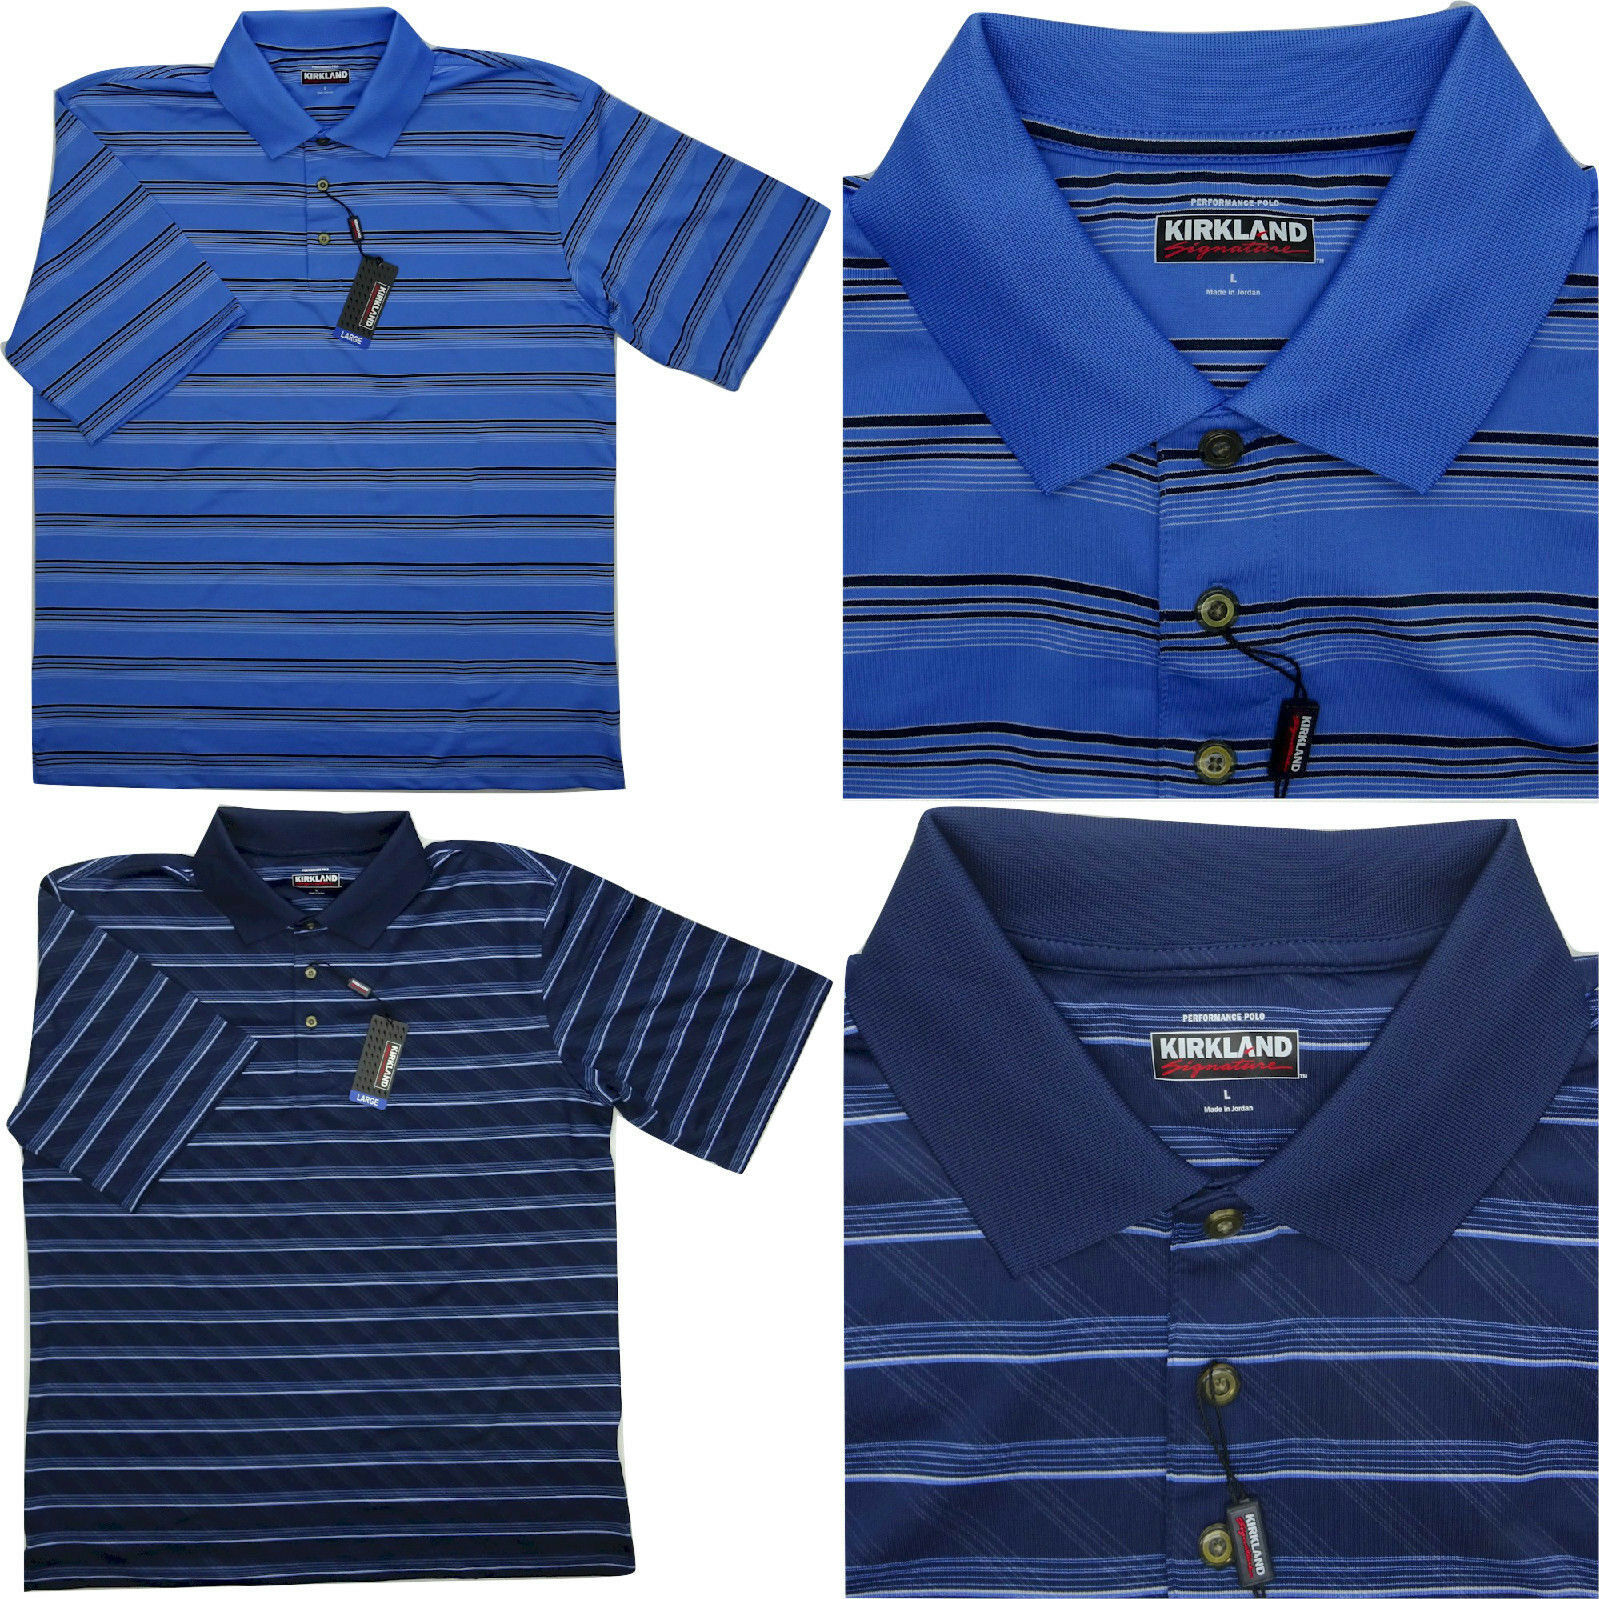 Kirkland Signature Men's Performance Polo Shirt Choose Size & Color -A